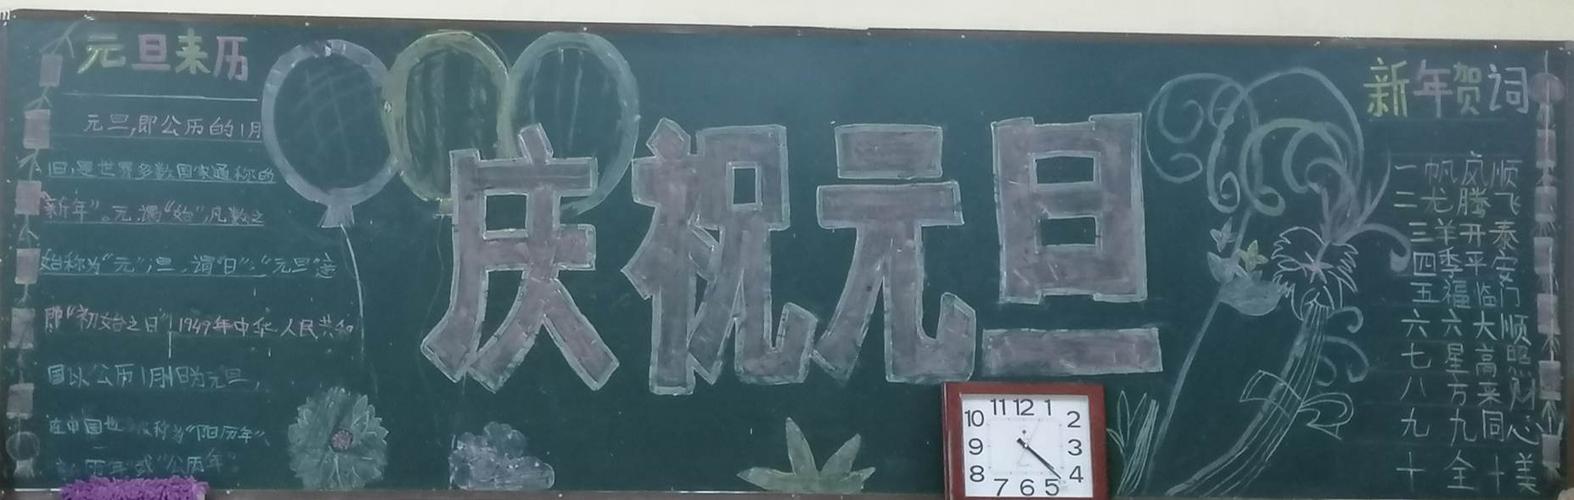 平原示范区龙源小学黑板报和心愿墙展示 写美篇   五 六年级的黑板报